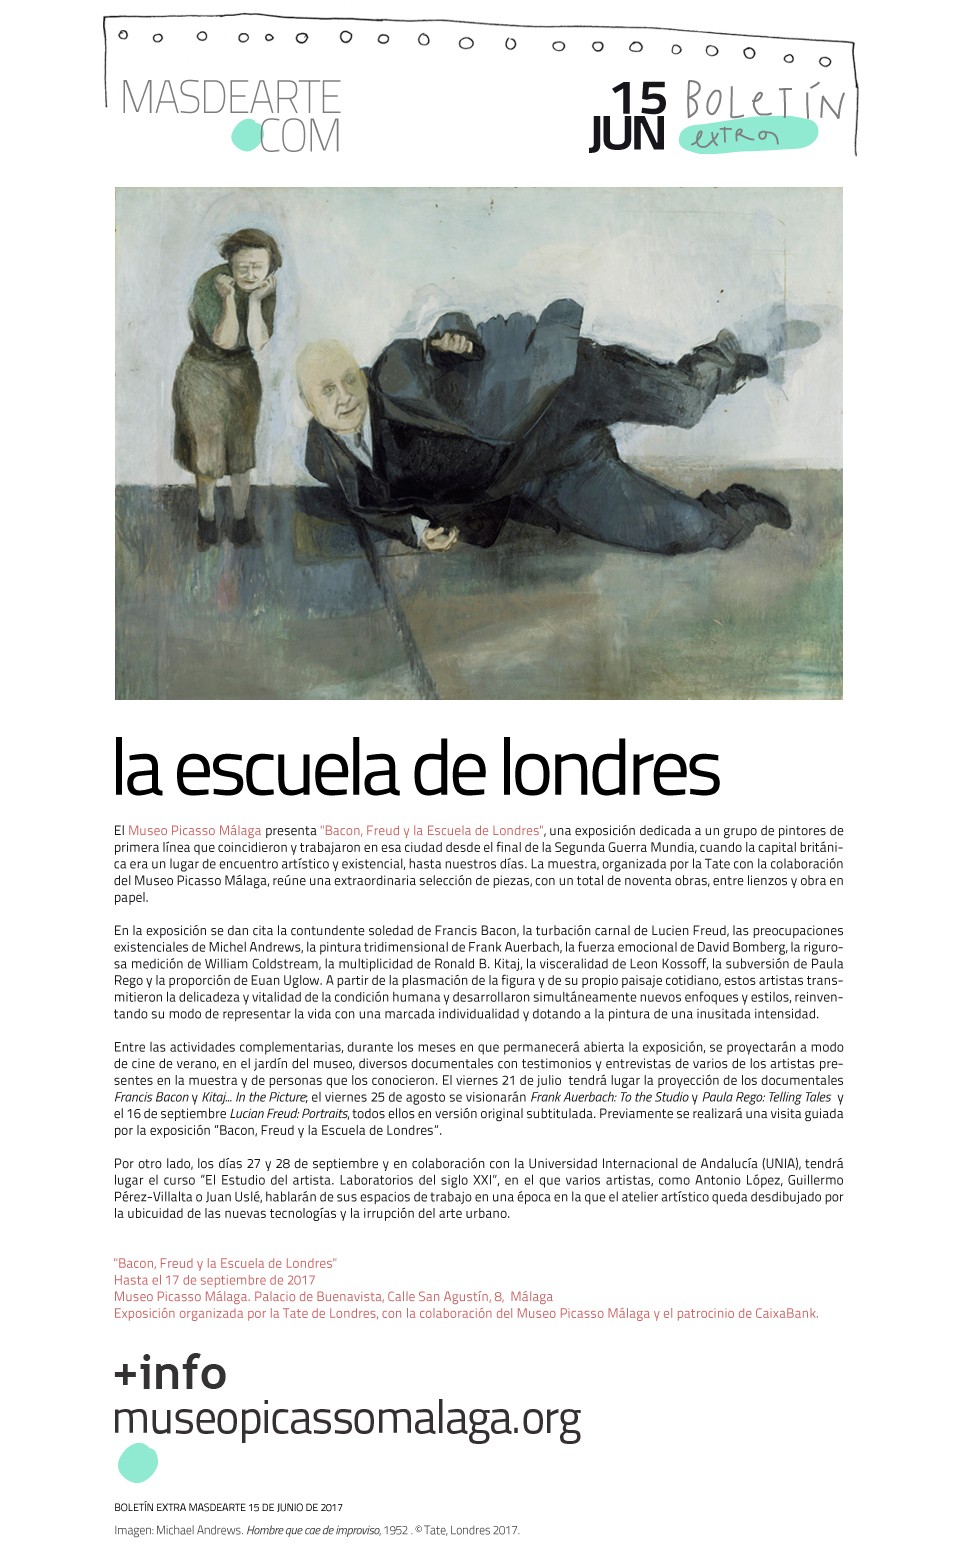 La Escuela de Londres. Exposición en el Museo Picasso Málaga,
 hasta el 17 de septiembre de 2017